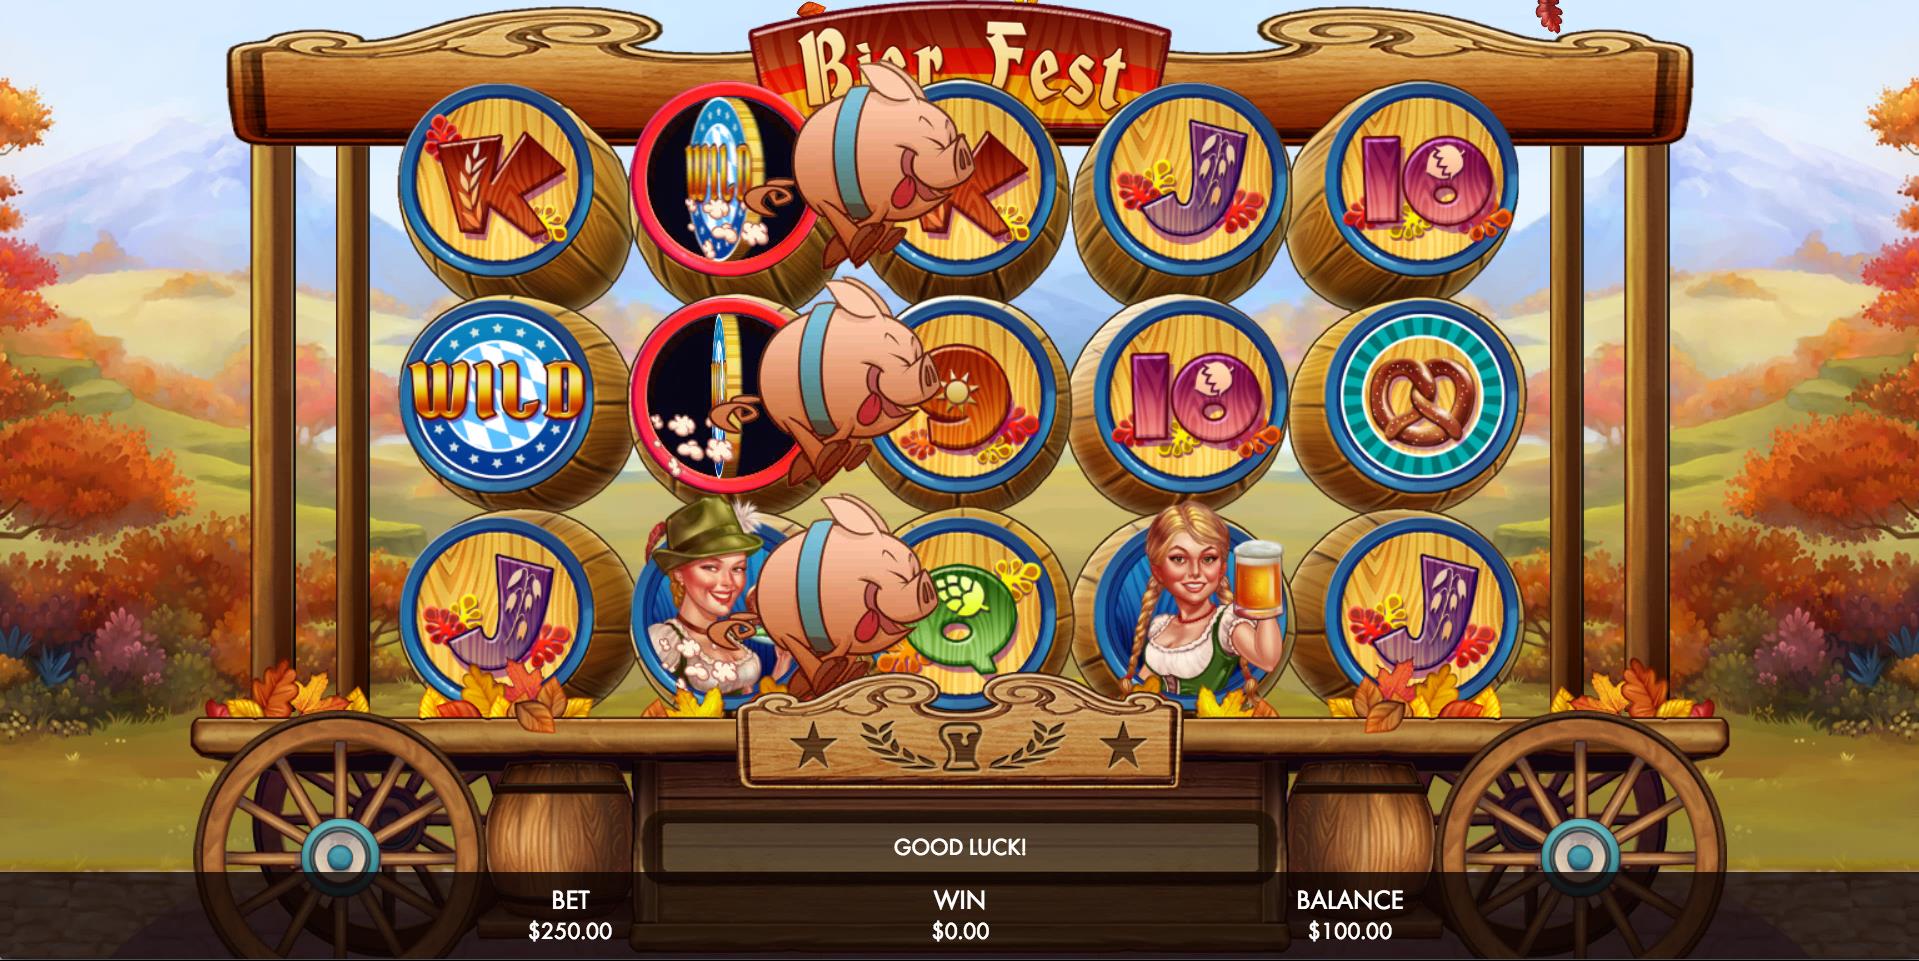 Bier Fest Casino